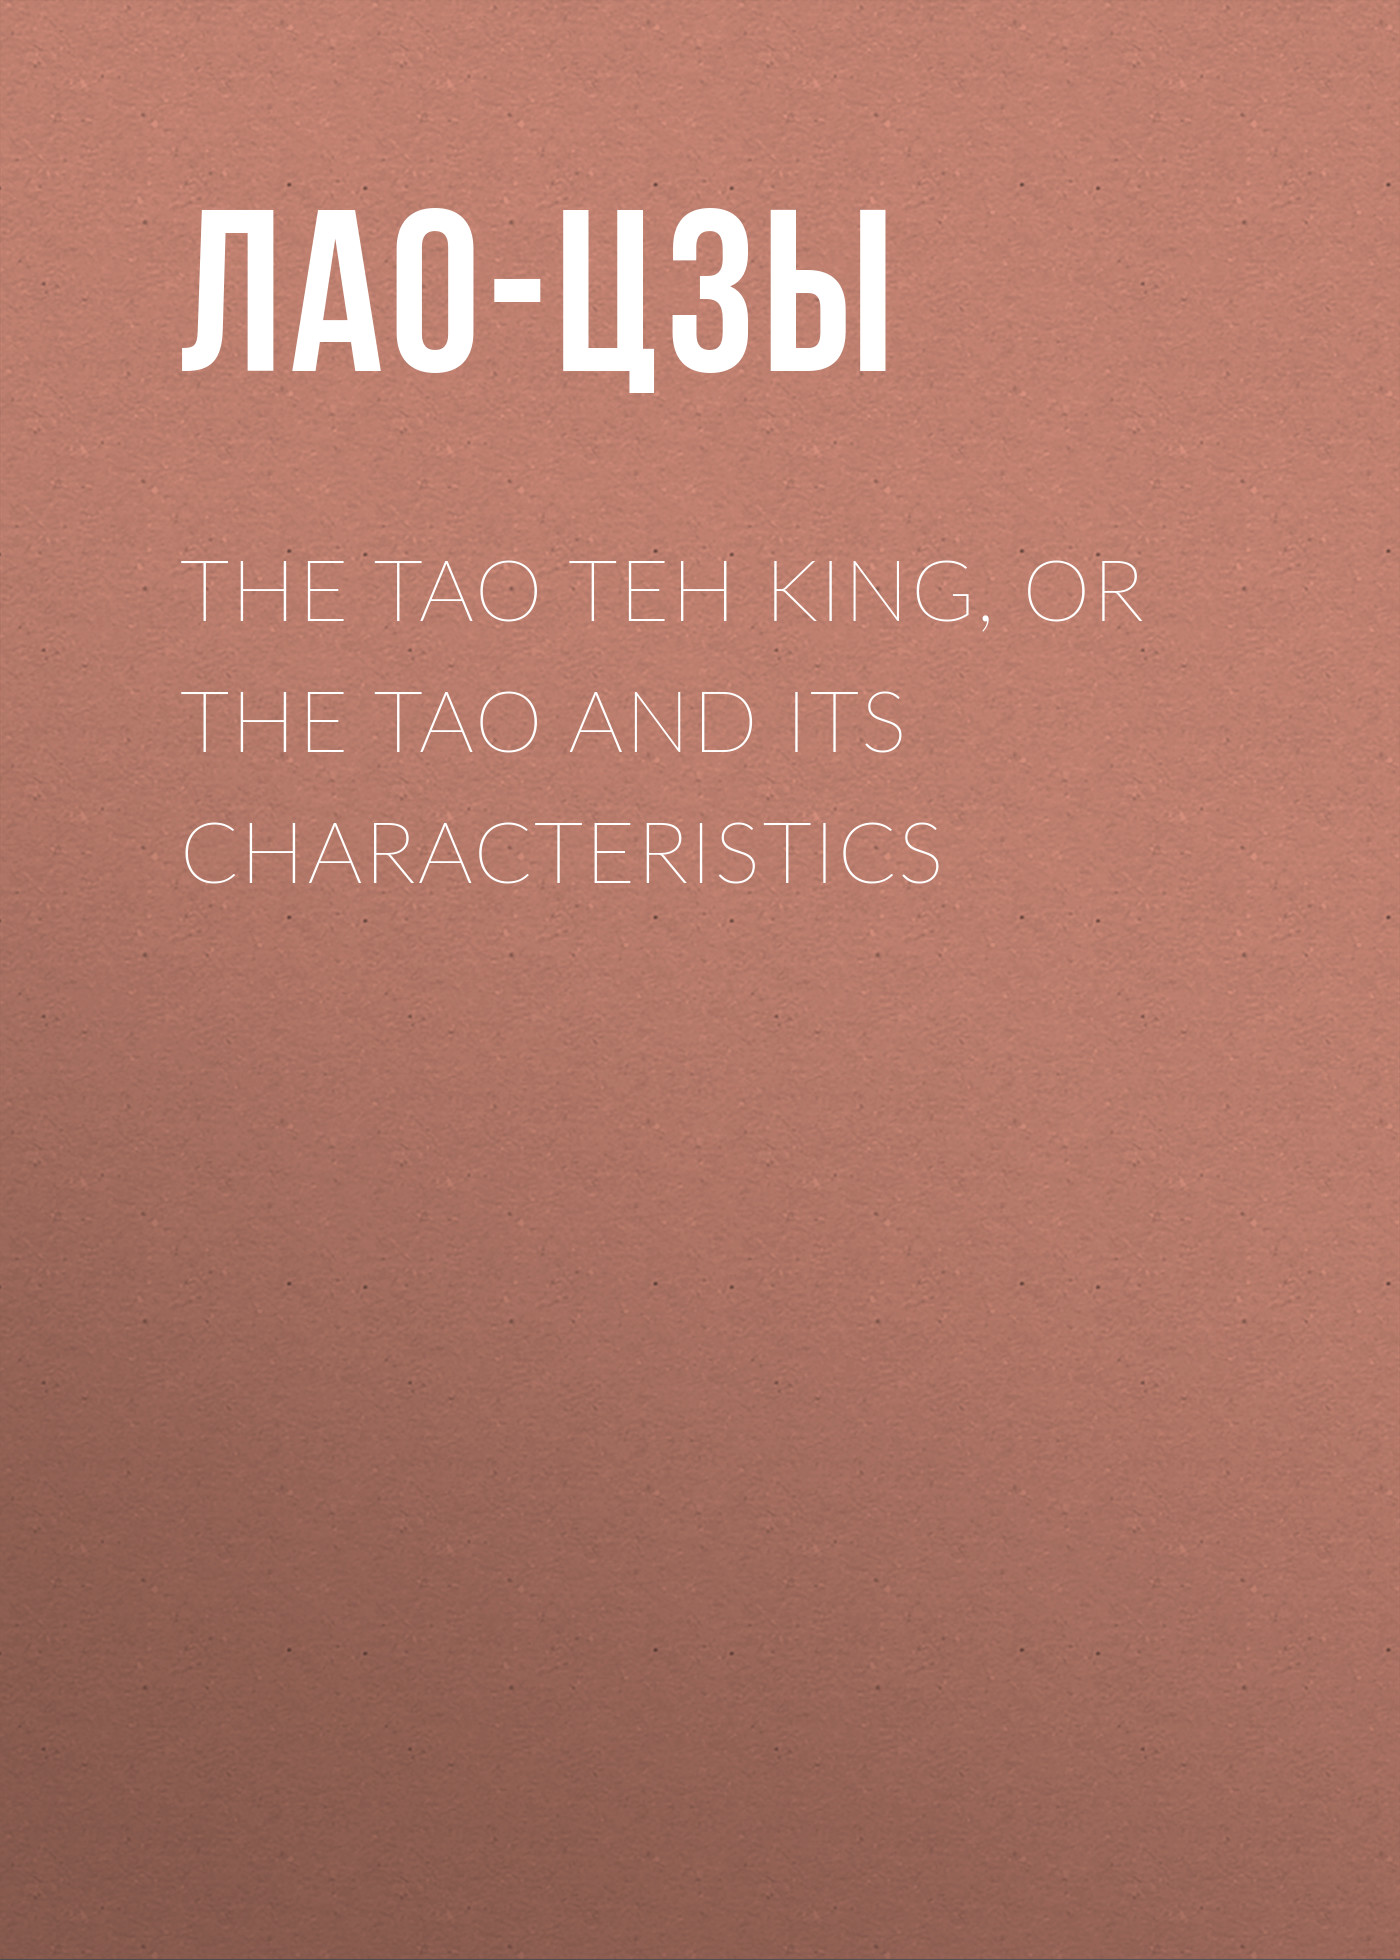 Книга The Tao Teh King, or the Tao and its Characteristics из серии , созданная  Лао-цзы, может относится к жанру Зарубежная старинная литература, Философия, Зарубежная образовательная литература. Стоимость электронной книги The Tao Teh King, or the Tao and its Characteristics с идентификатором 34838438 составляет 0 руб.